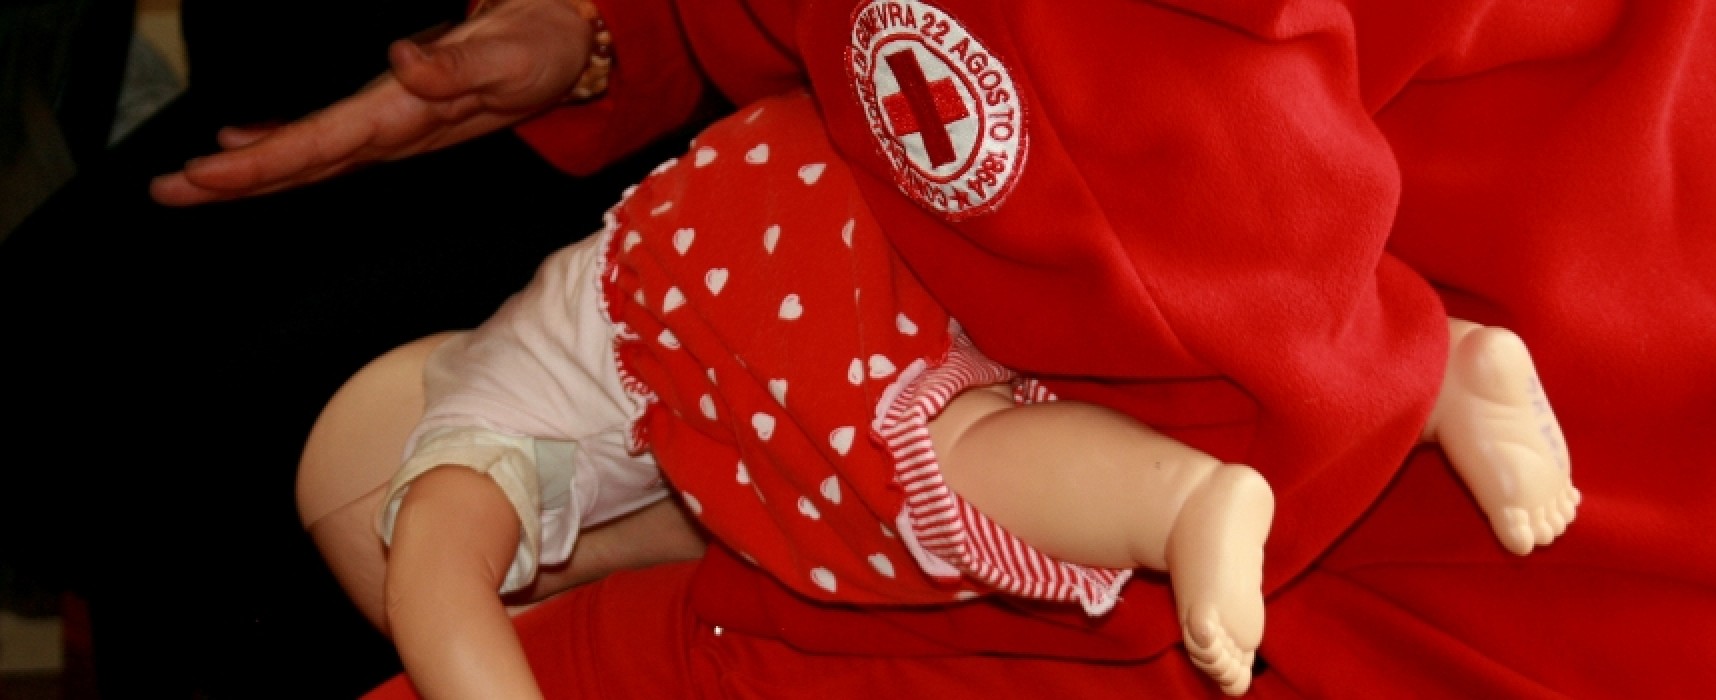 Manovre salvavita pediatriche, incontro alla scuola materna “Gesù Fanciullo”